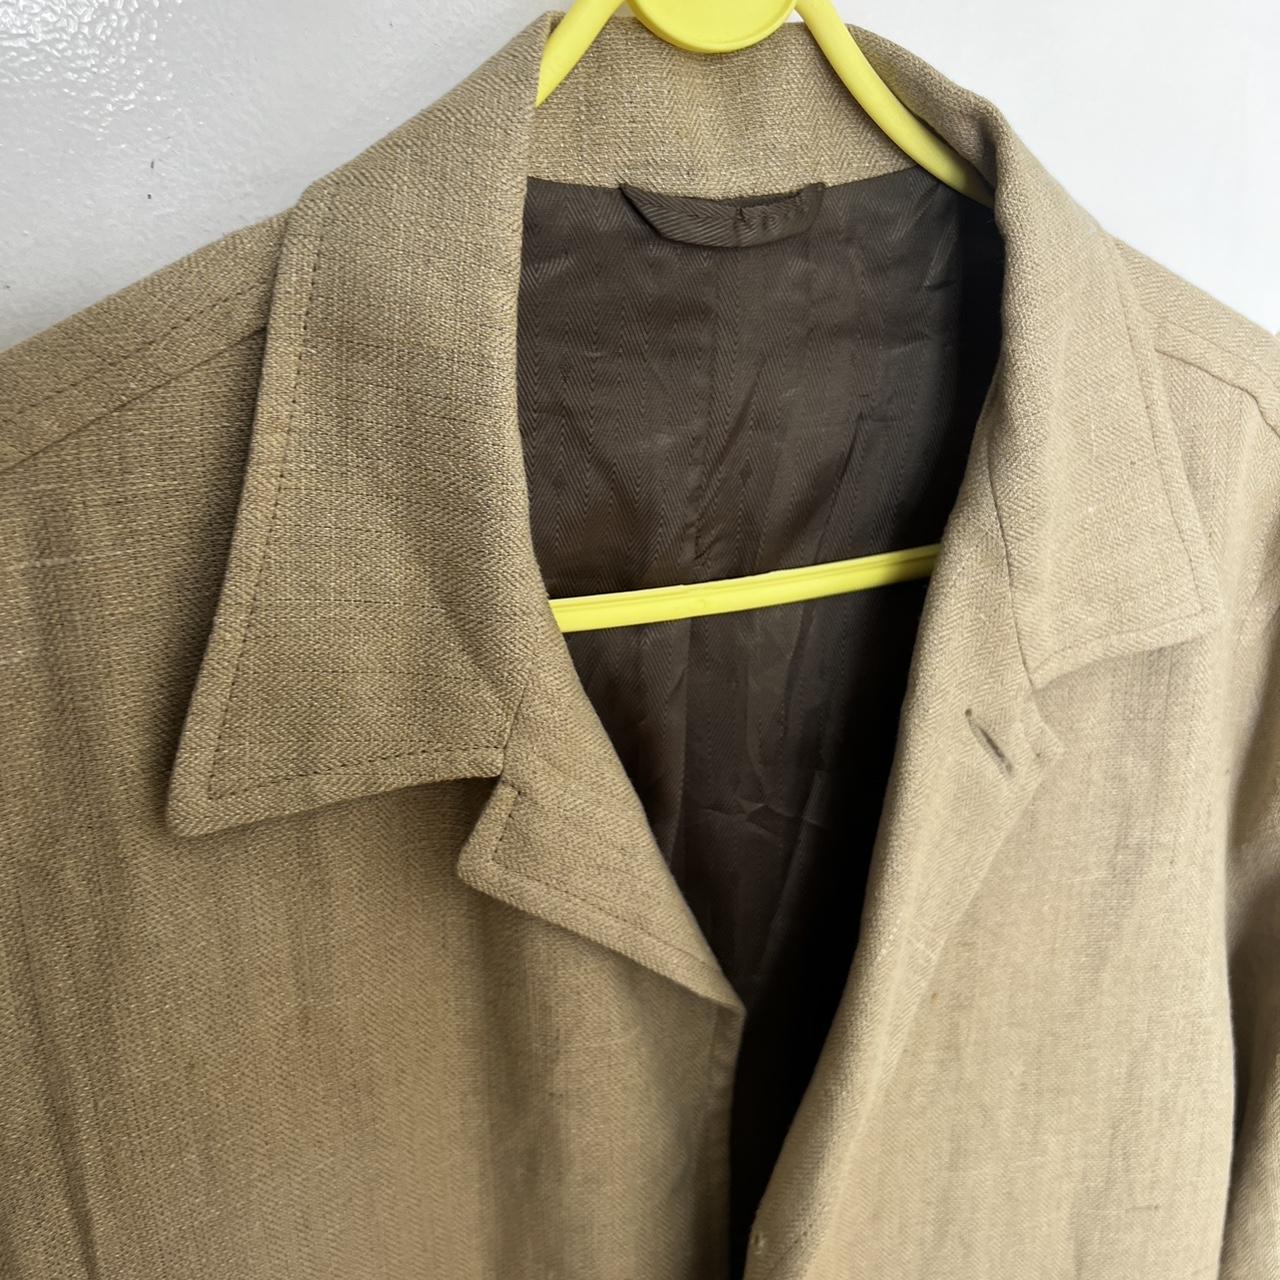 Vintage Beige Chore Jacket. - Depop